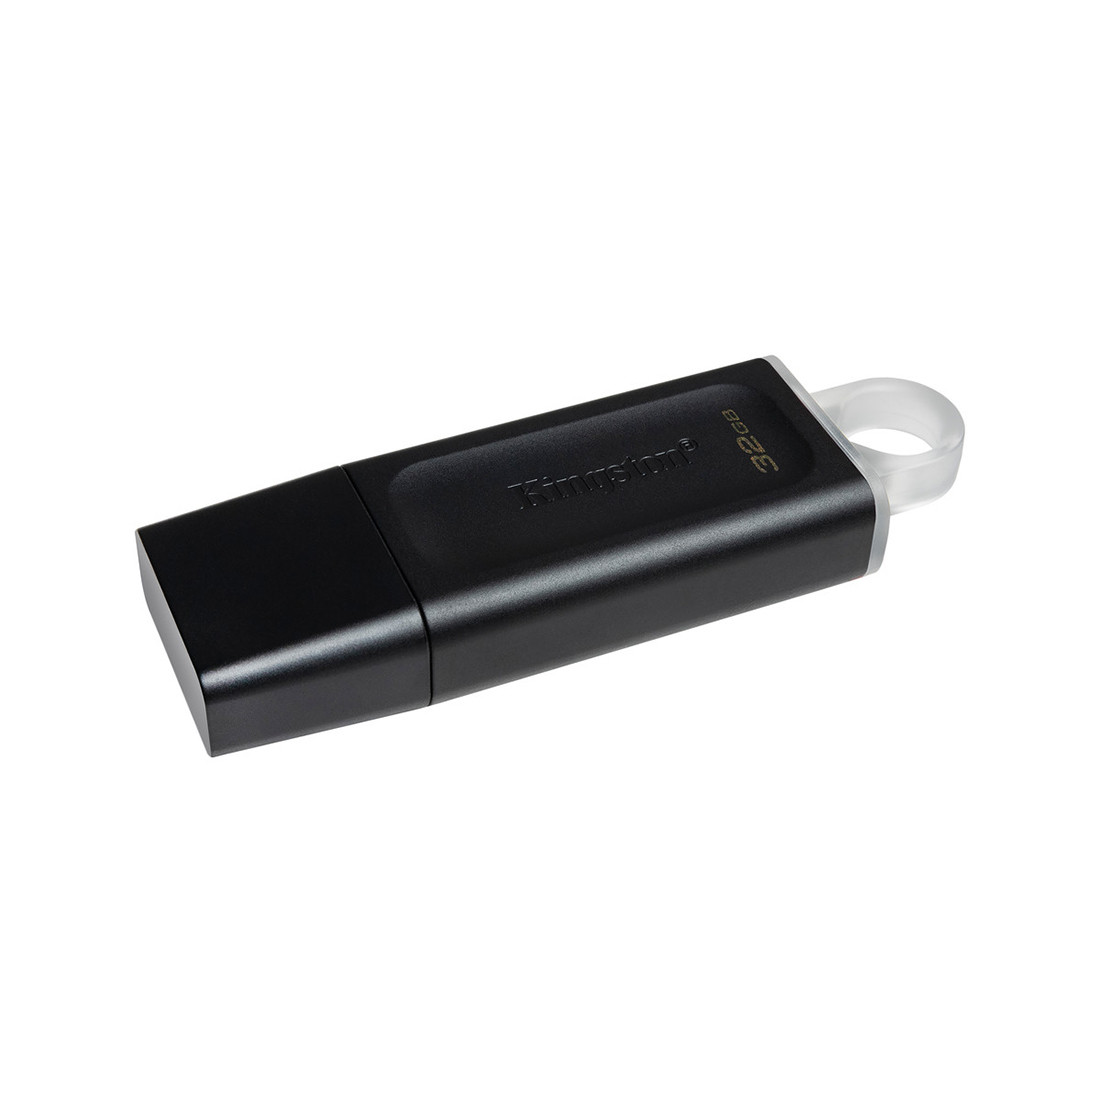 USB-накопитель Kingston DTX/32GB 32GB Чёрный, фото 1